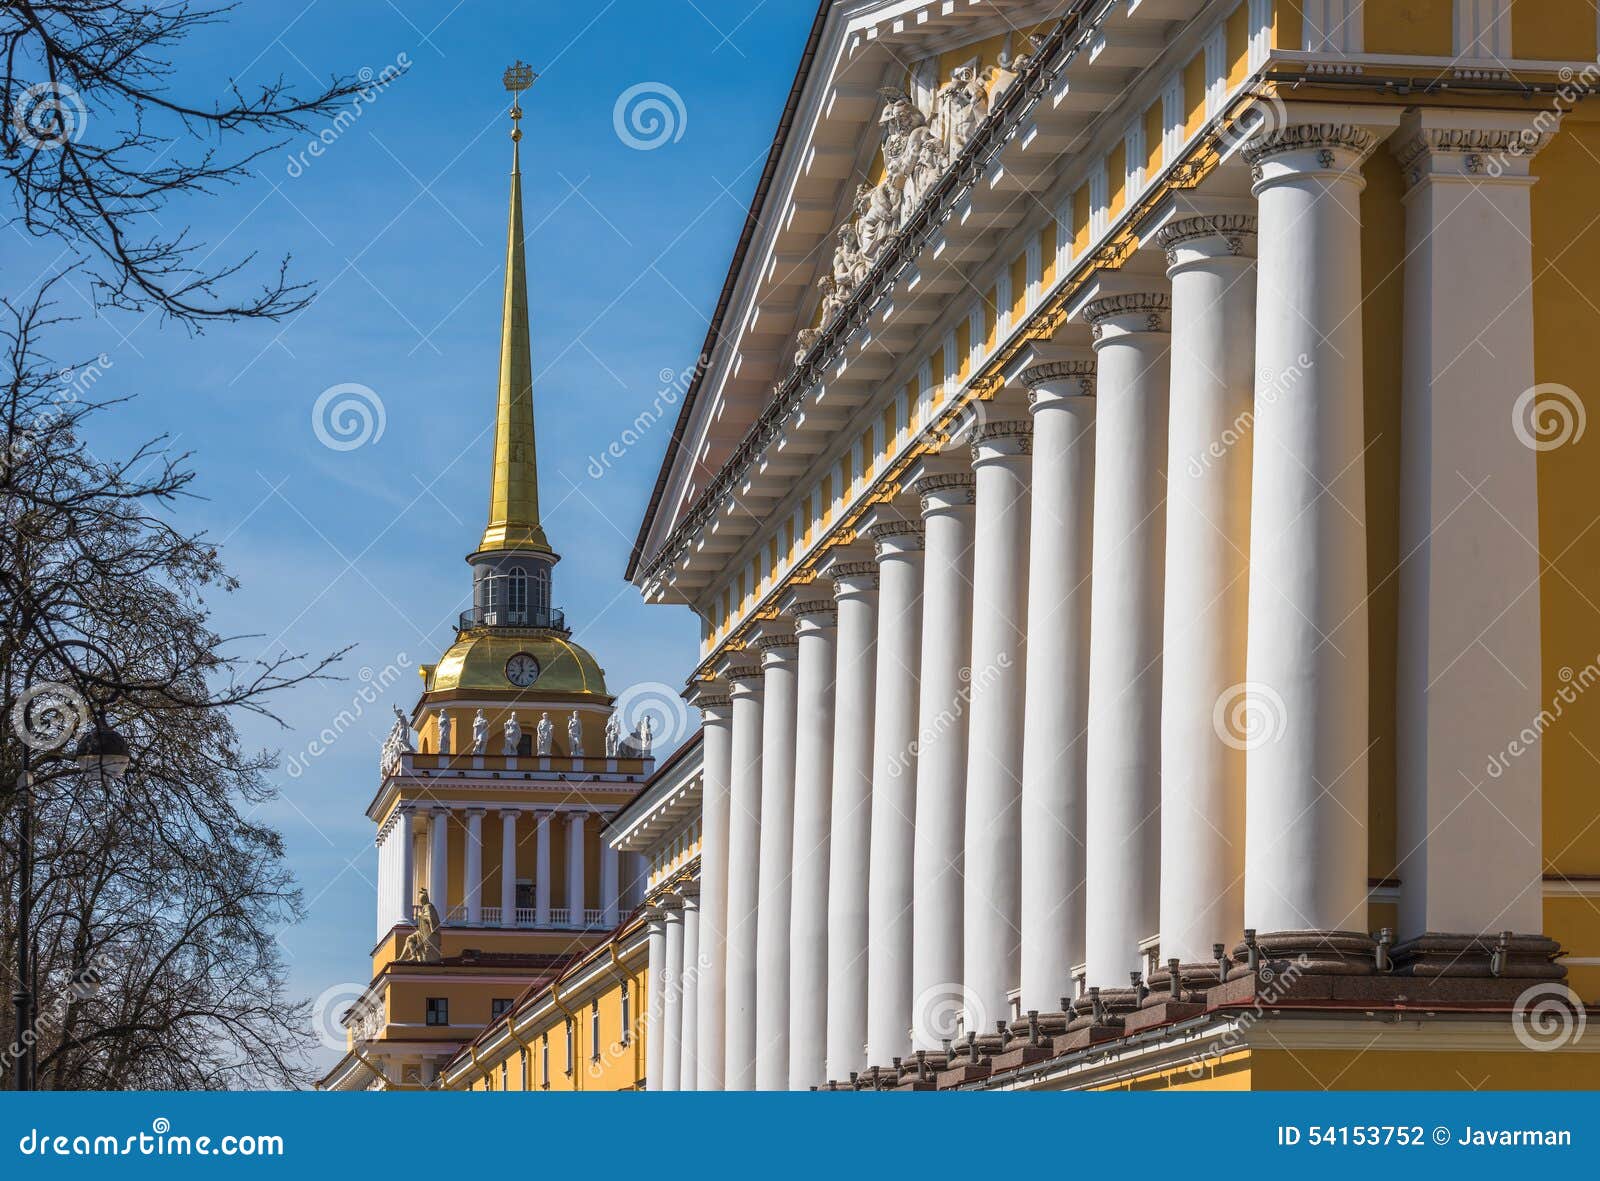 admiralty building, saint petersburg, russia